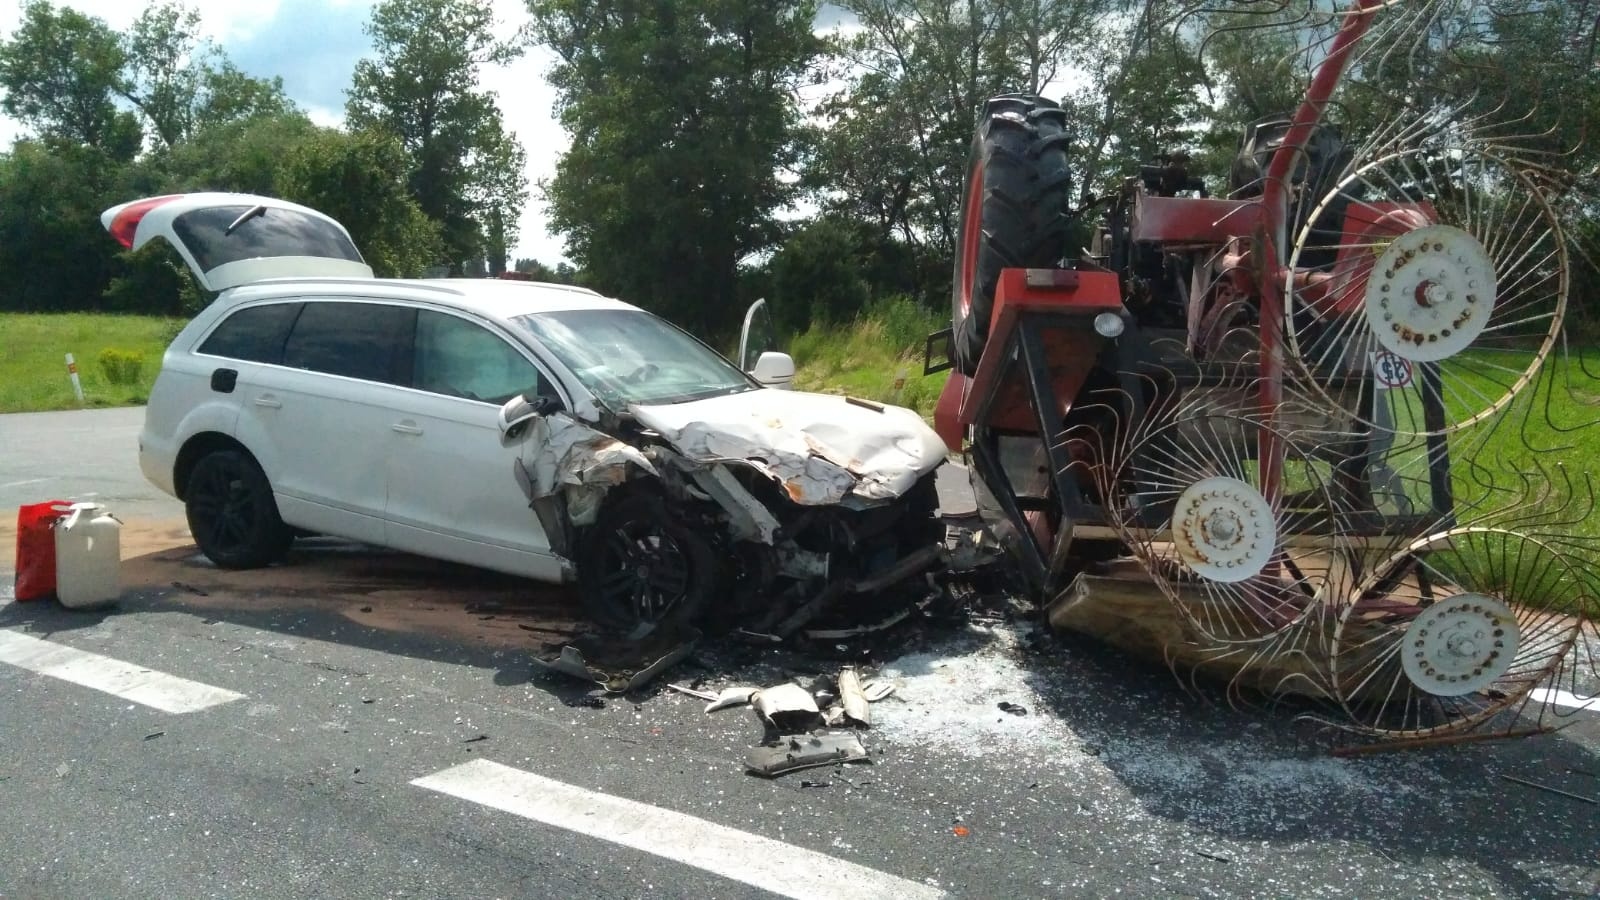 OBRAZEM: U Klipce se srazil osobní automobil s traktorem - Nymburský deník